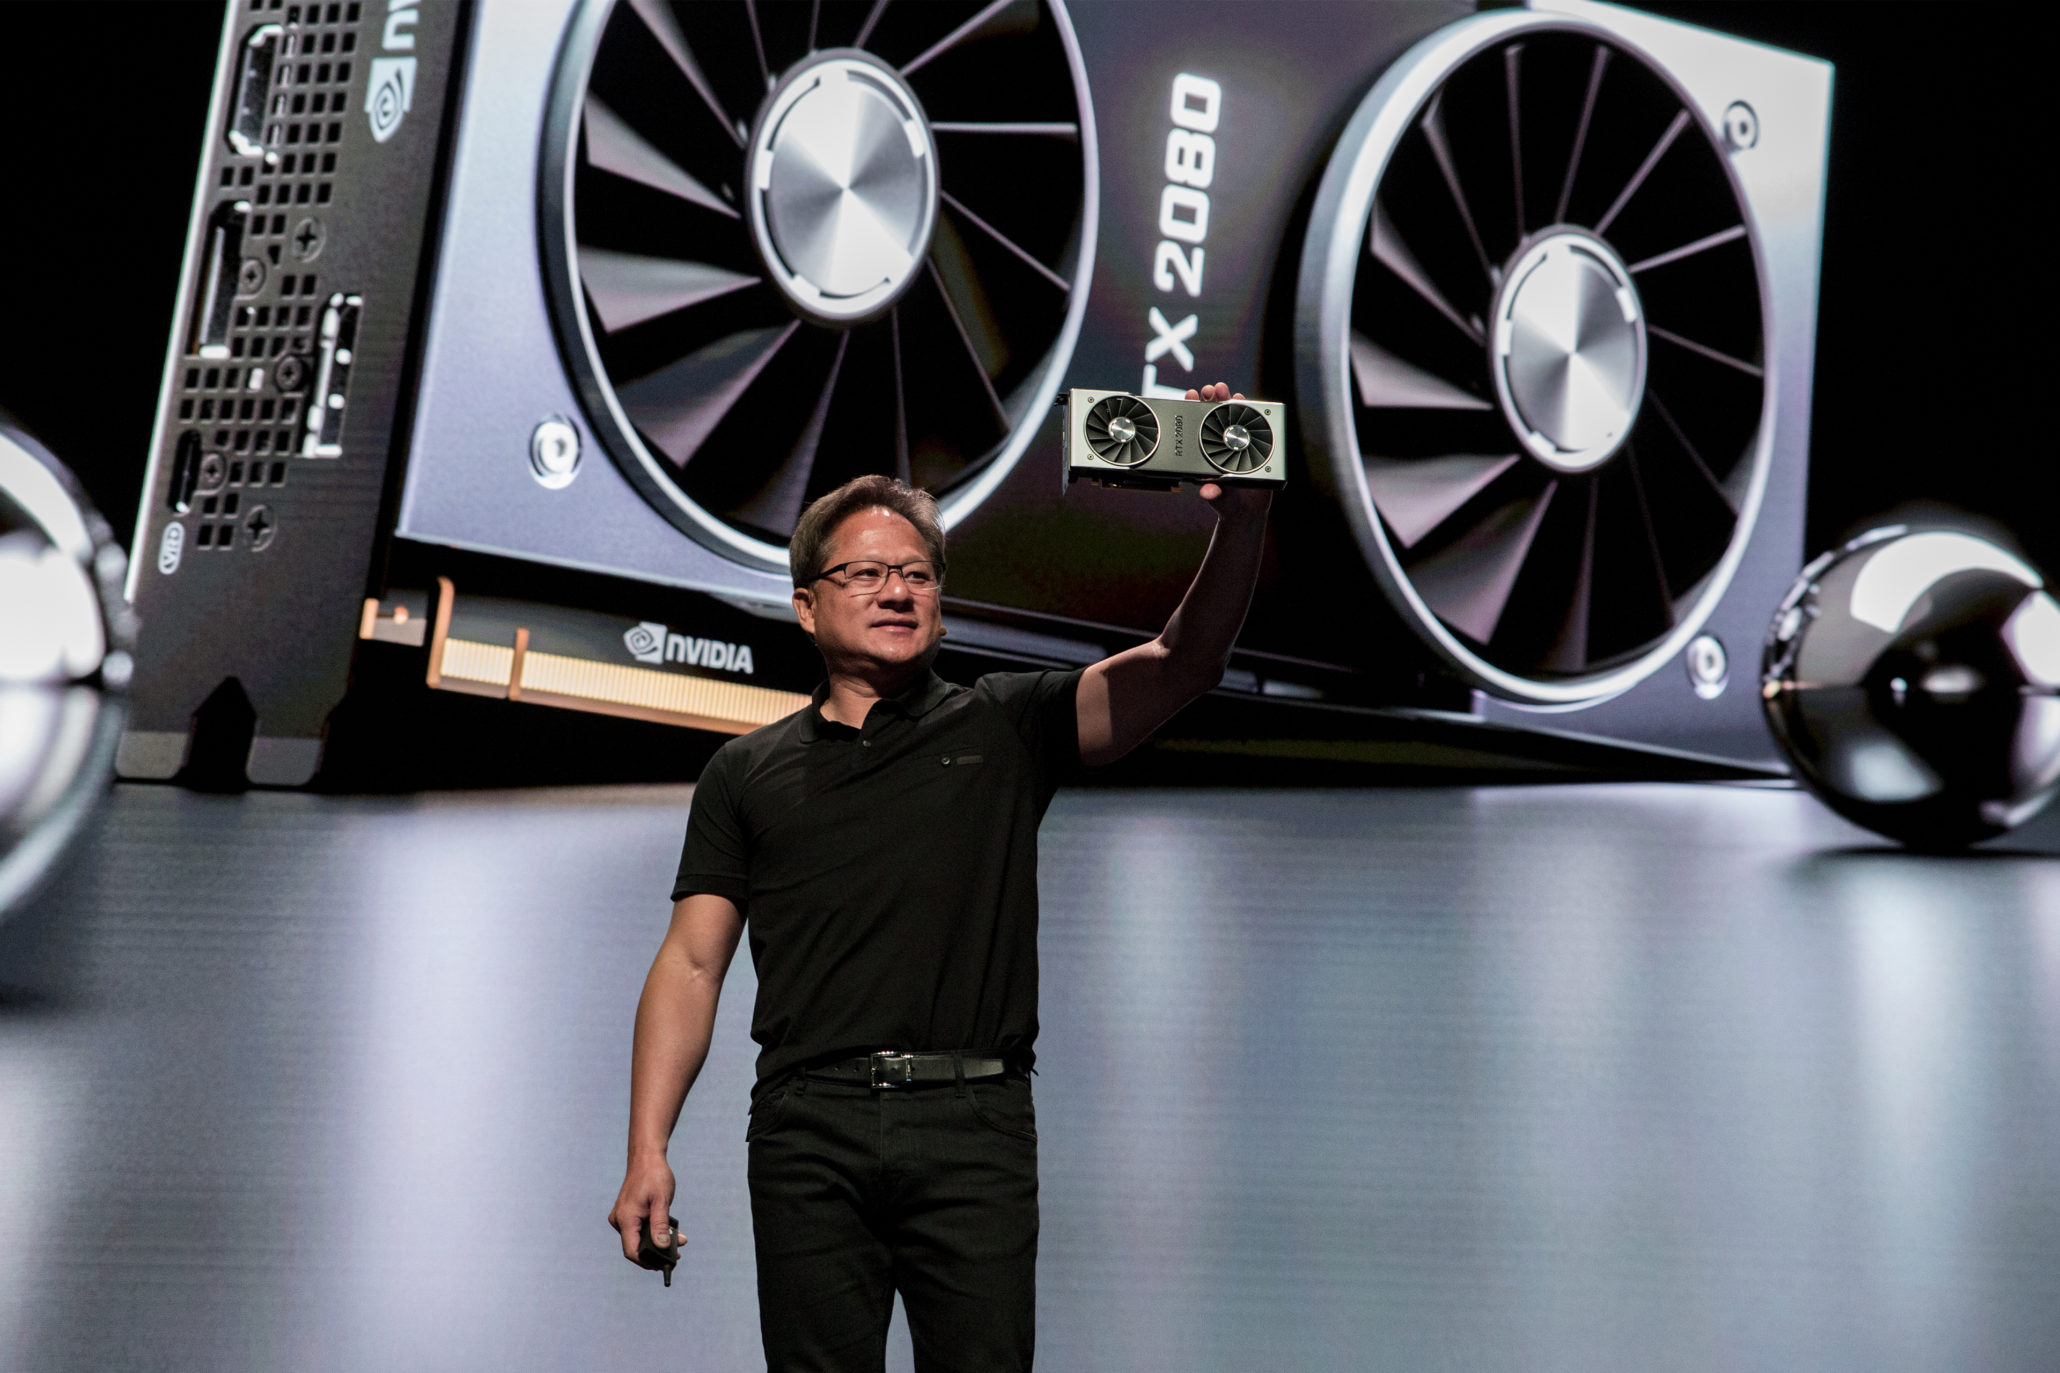 NVIDIA cho thấy GPU GeForce RTX của họ nhanh hơn và mạnh hơn các máy chơi game thế hệ tiếp theo